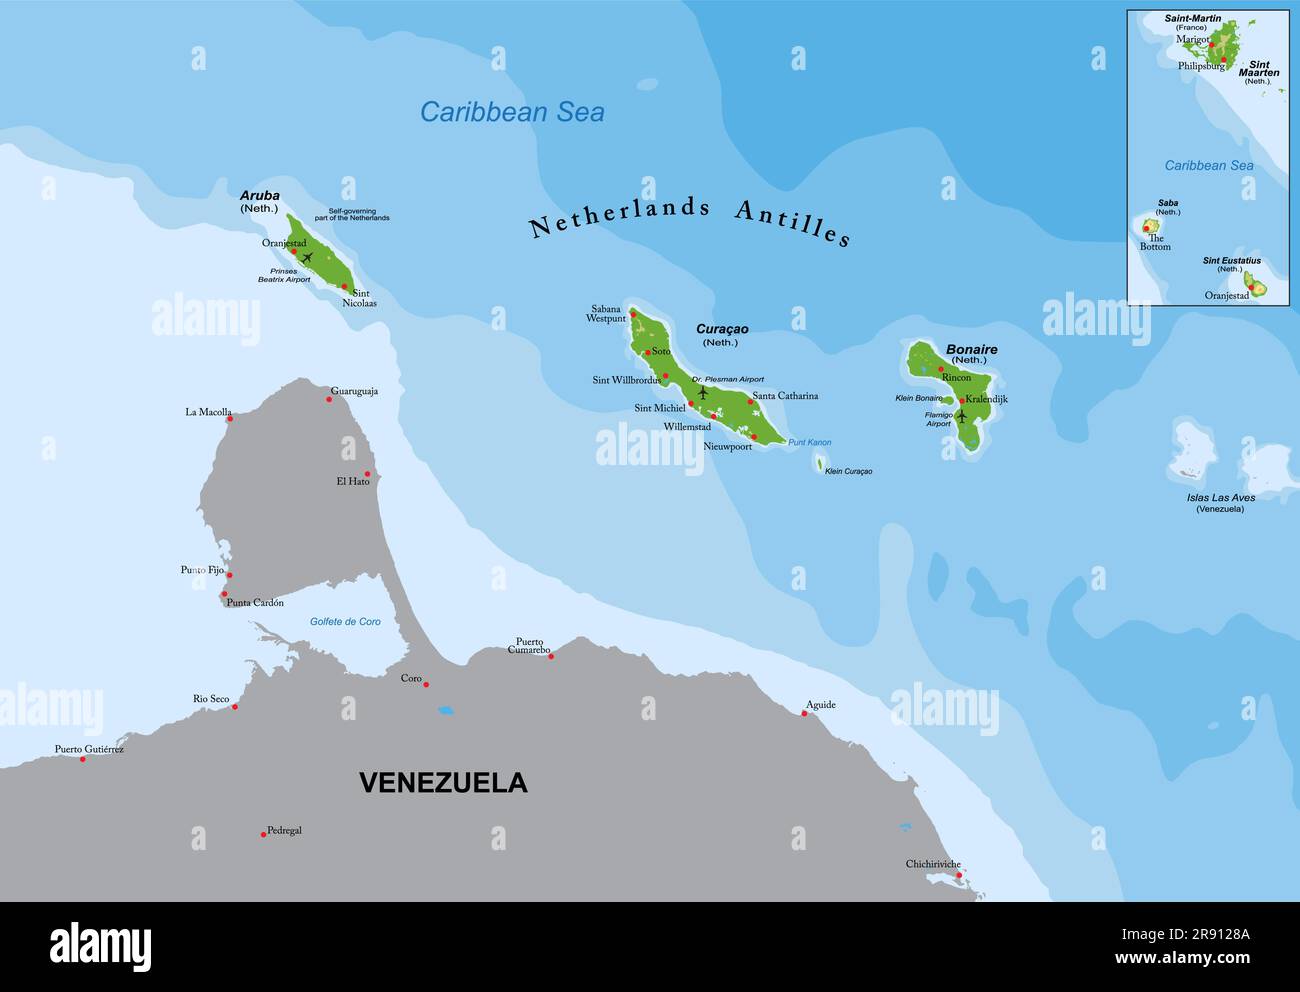 Carte physique très détaillée d'Aruba et des Antilles néerlandaises en format vectoriel, avec toutes les formes de relief, les régions et les grandes villes. Illustration de Vecteur